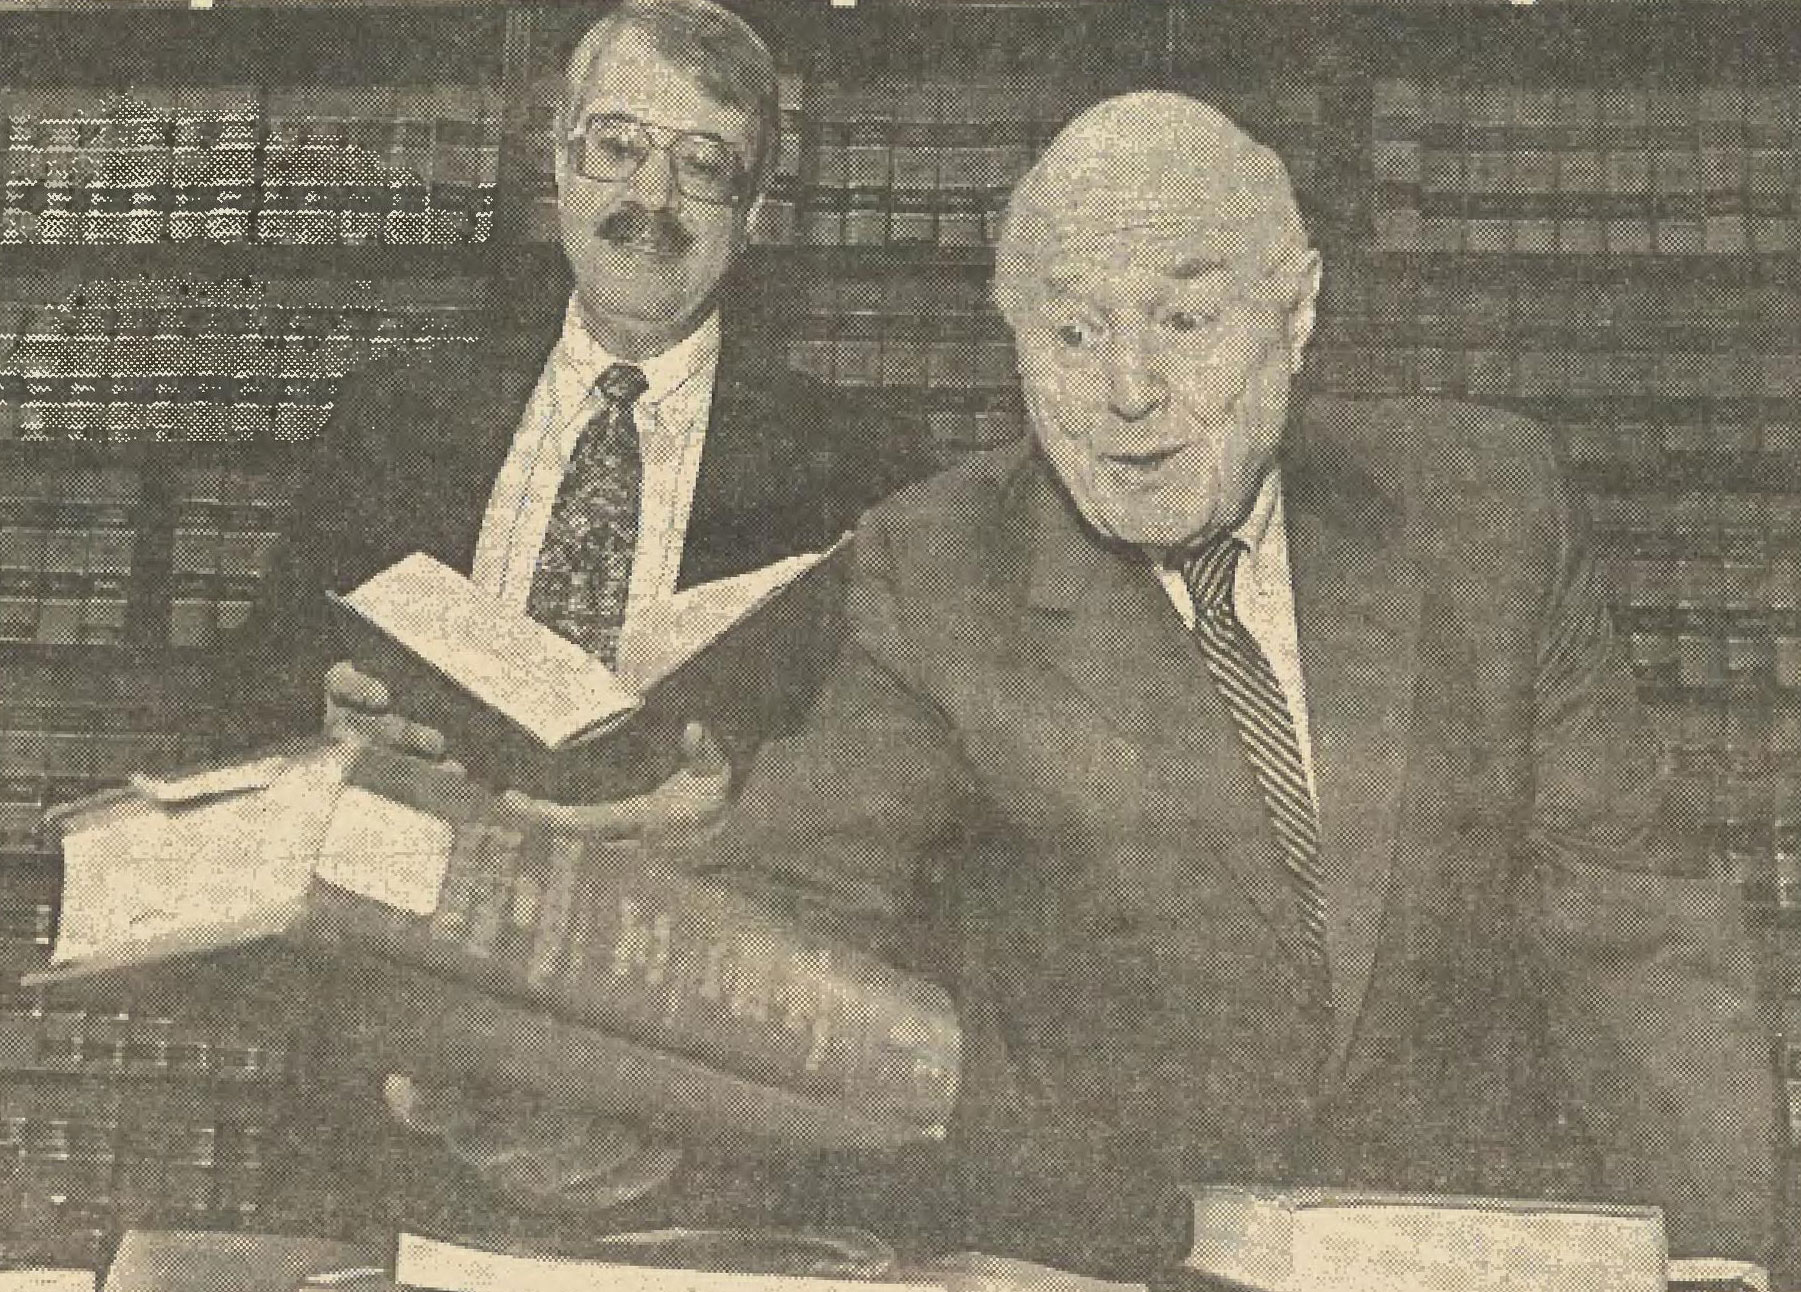 Larry Coppel and Eugene Feinblatt